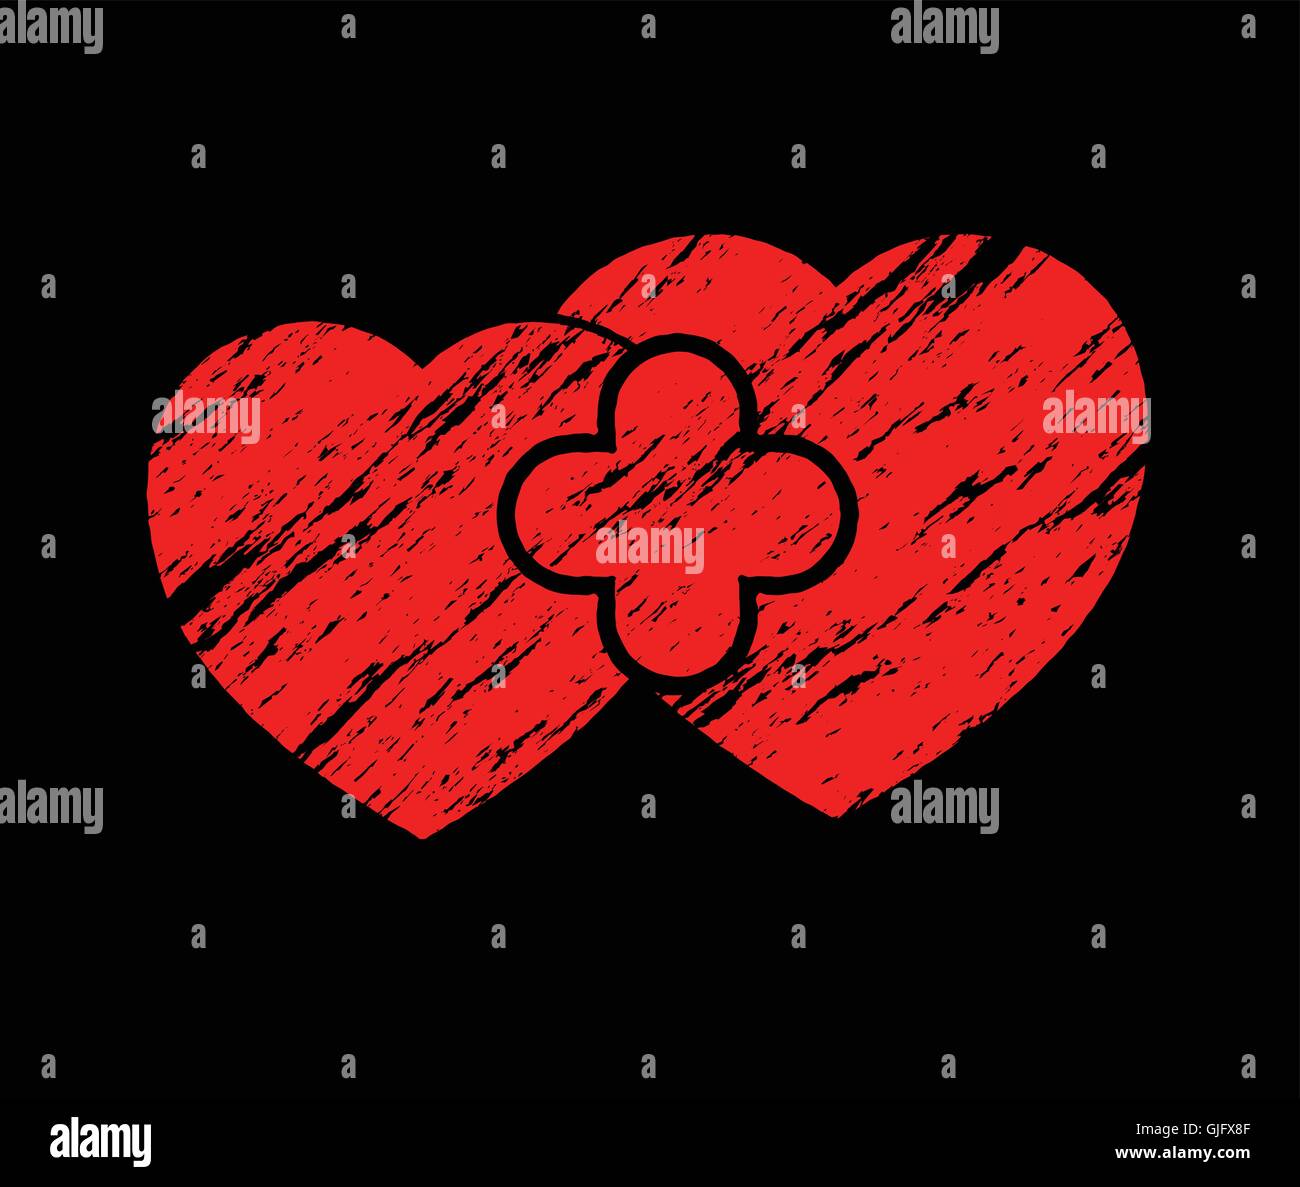 zwei rote Grunge-Herzen auf schwarzem Hintergrund abstrakt Vektor-illustration Stock Vektor